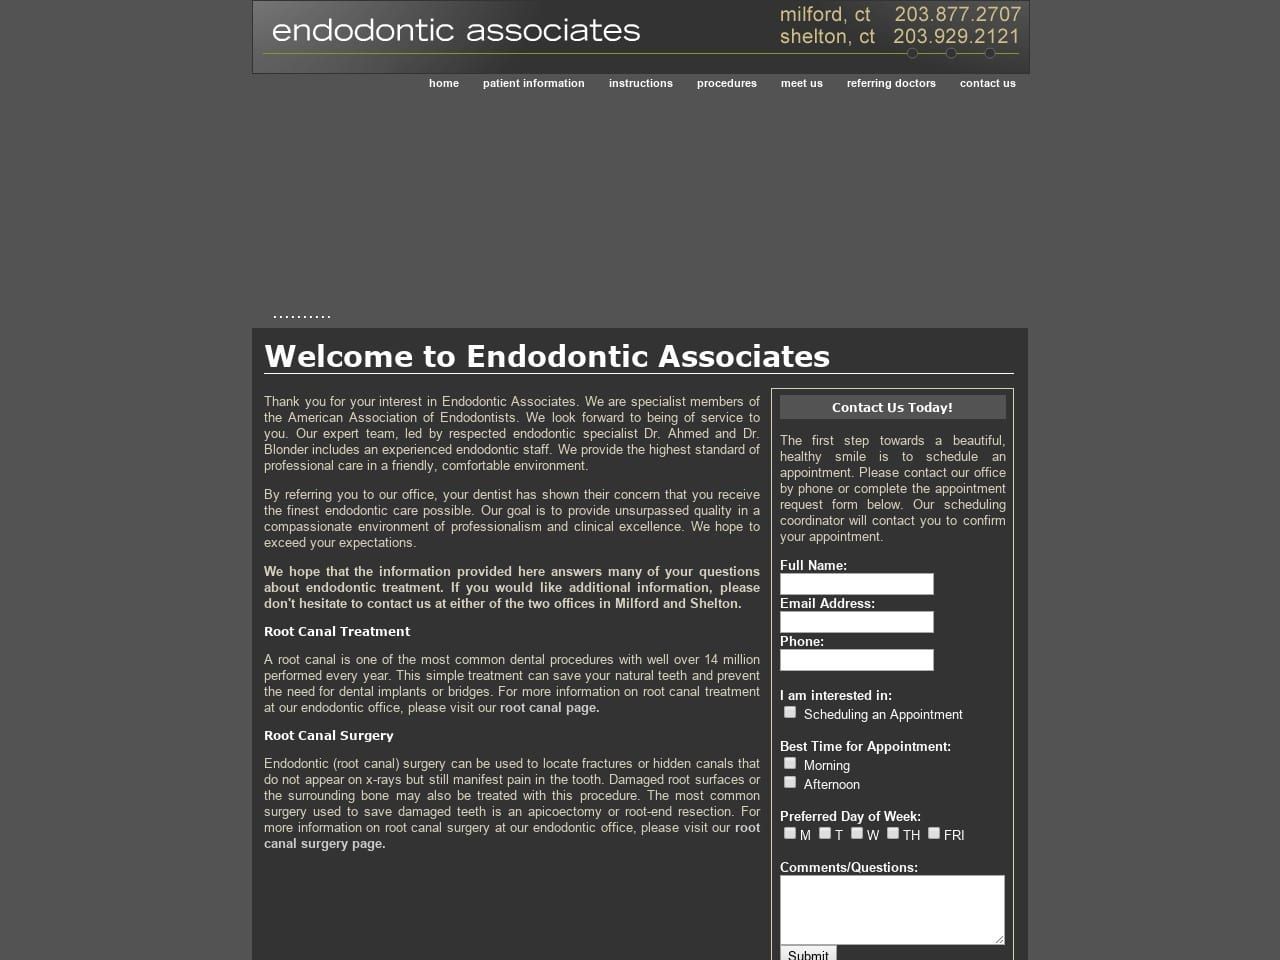 Endodontic Associates Website Screenshot from milfordendo.com